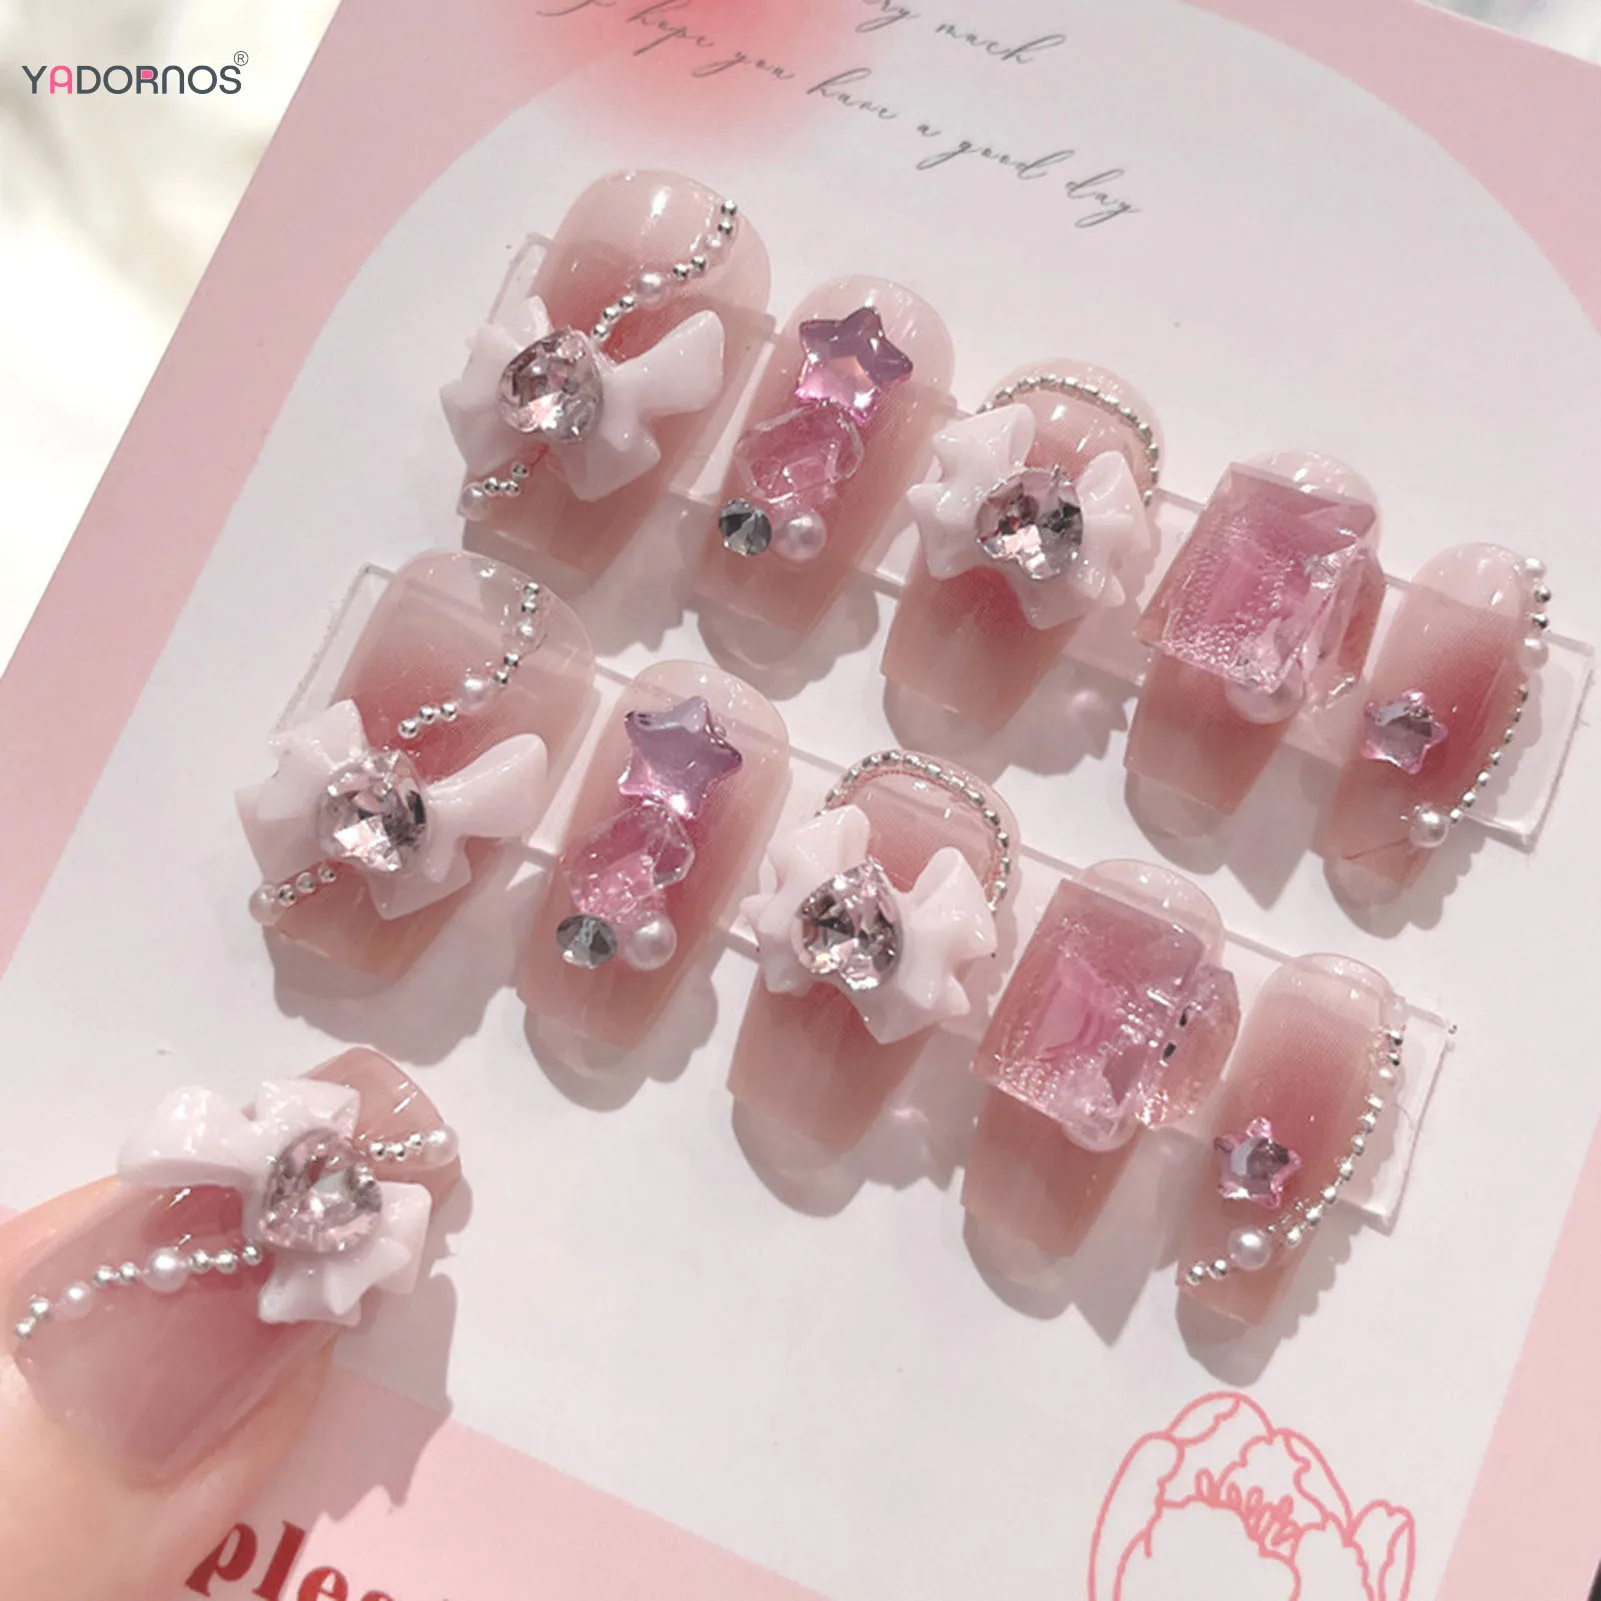 Blush Pink False Nails Bowknot Diamond Pearl 3D Design Press on Nail Tips with Harmless Smooth Edge Nails Woman DIY Fake Nails